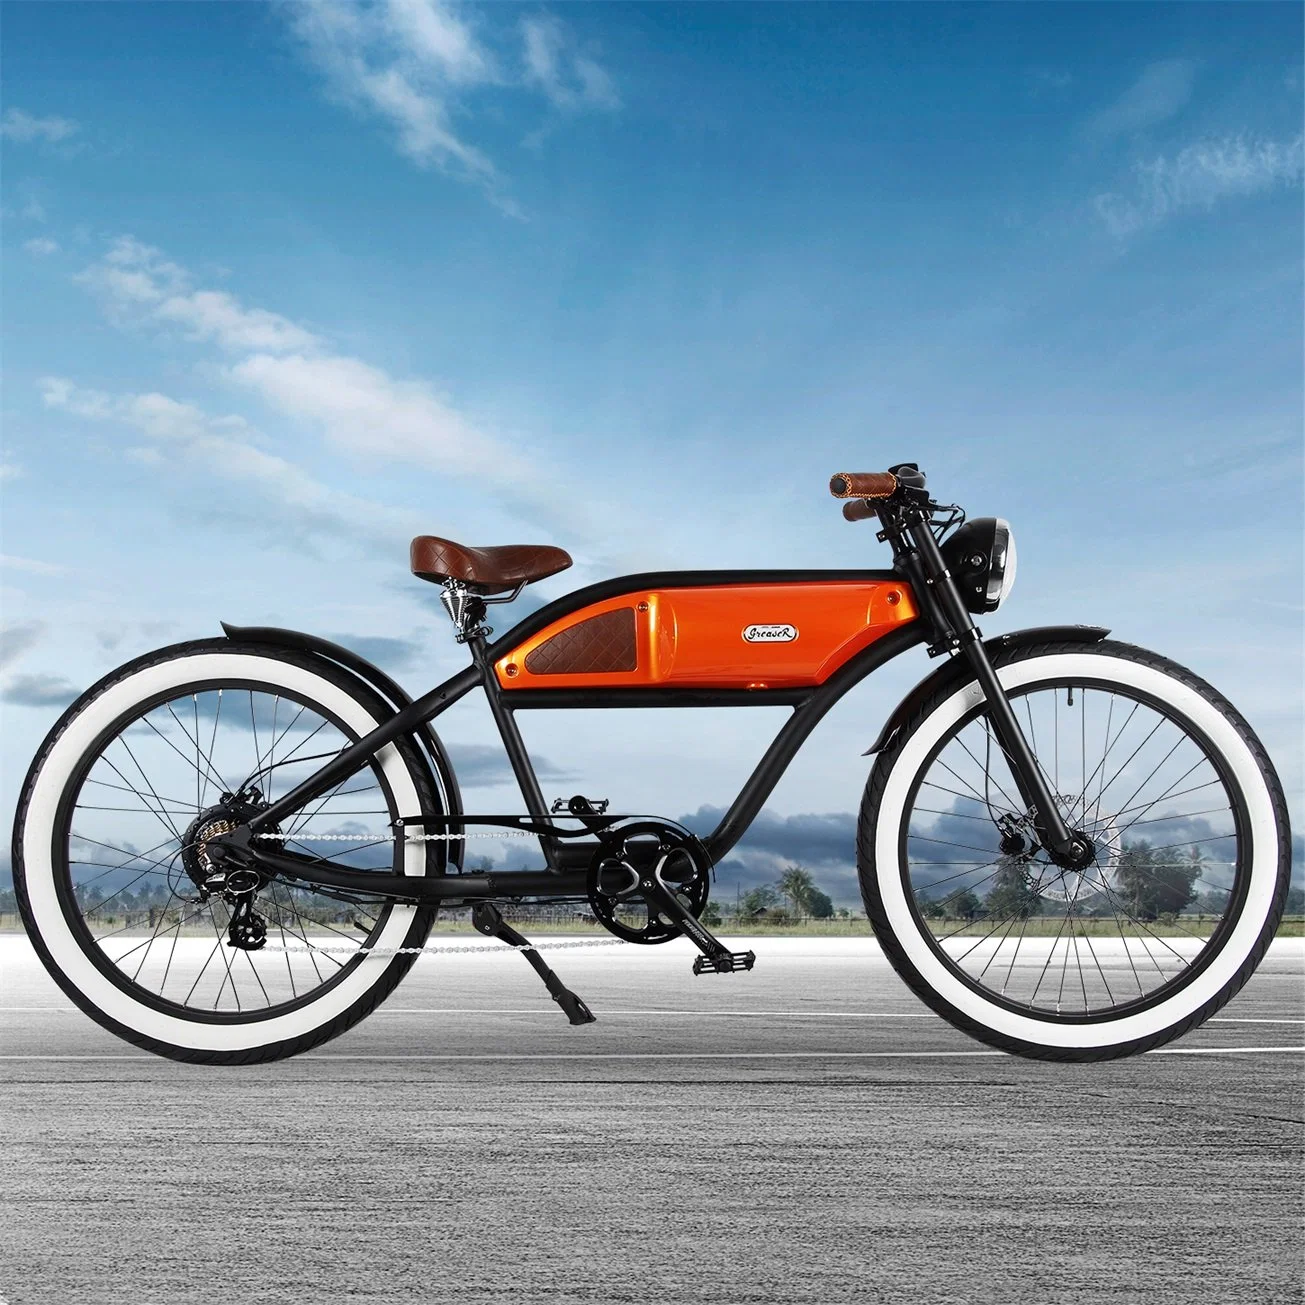 الدراجة الكهربائية En15194 بقدرة 350 واط ودراجة كهربائية مقاس 26 بوصة مع شهادة CE